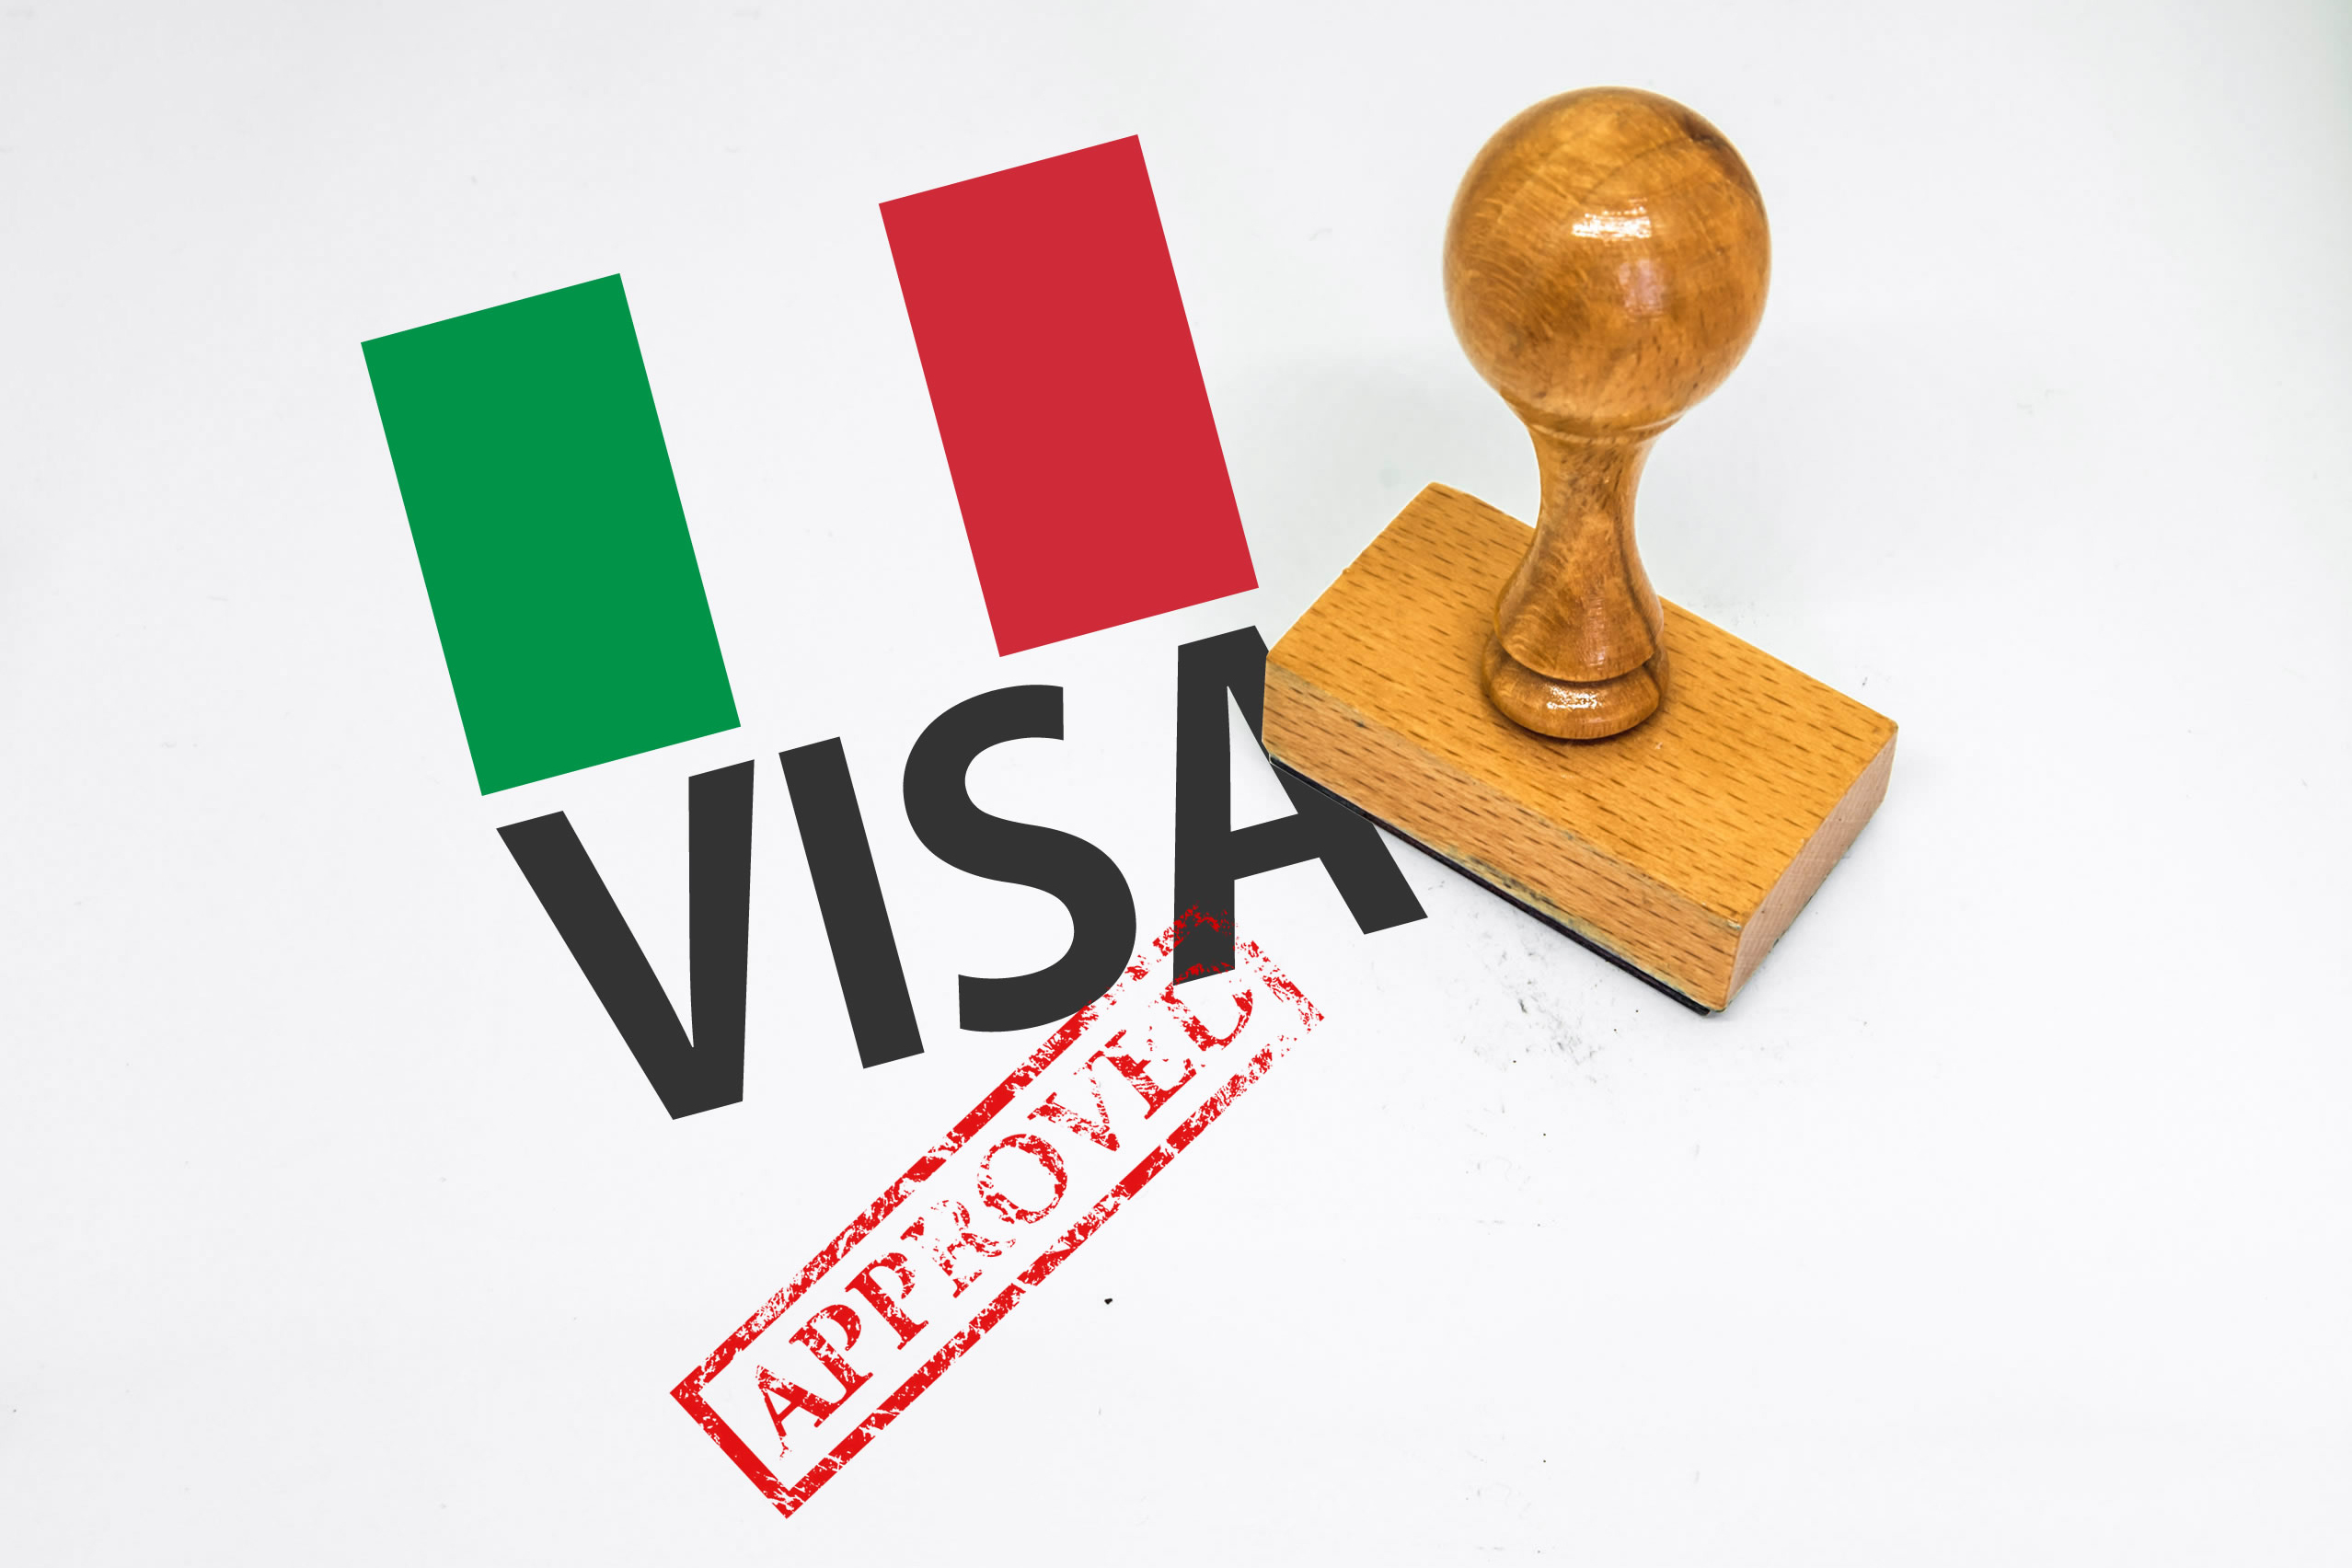 Obtaining a visa to Italy